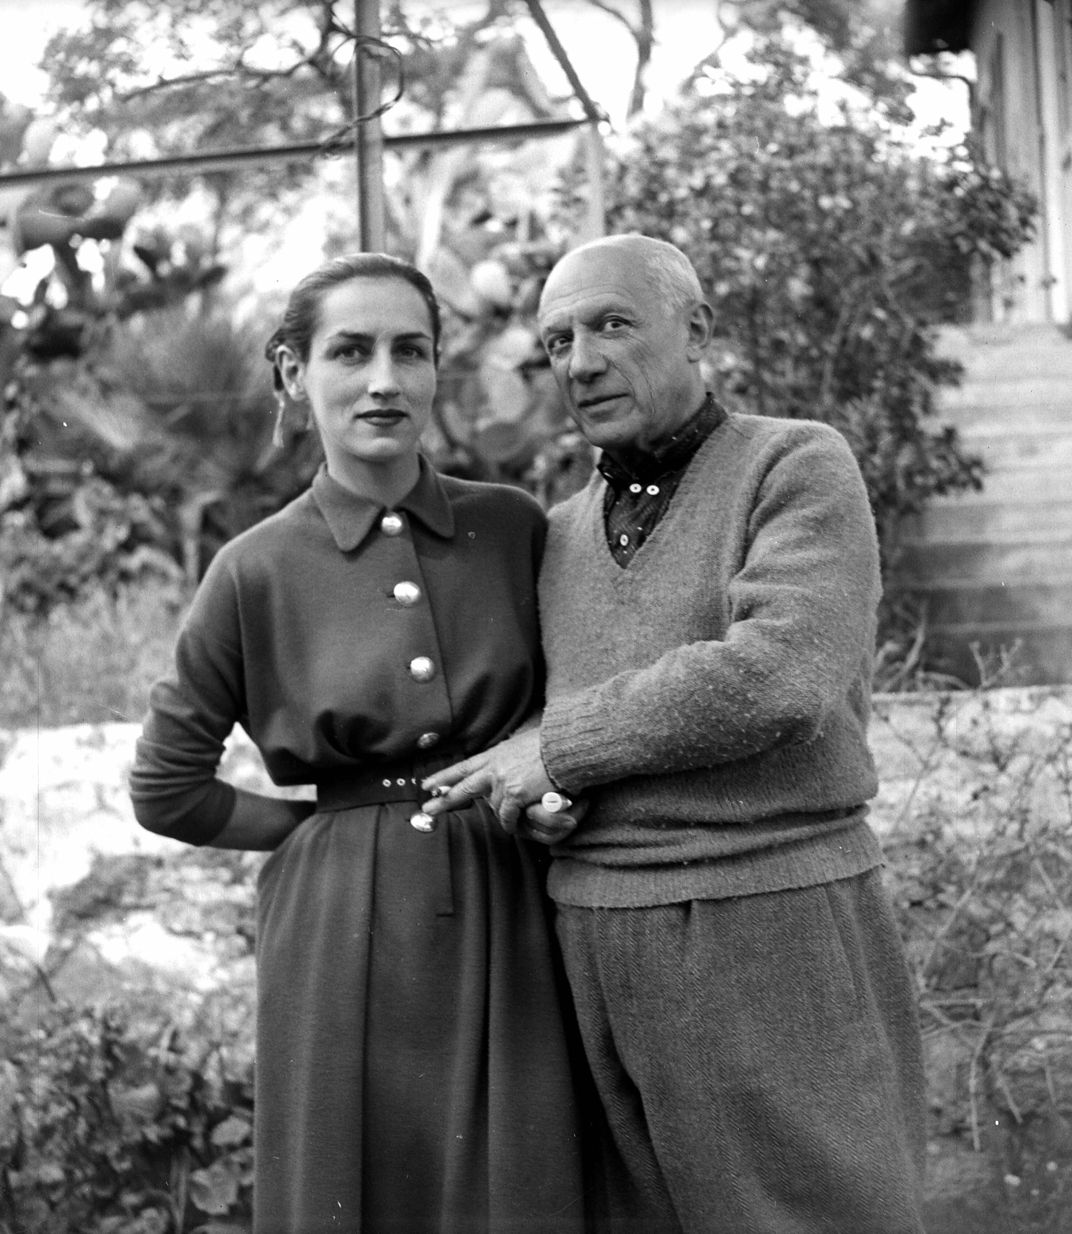 Pablo Picasso and Françoise Gilot